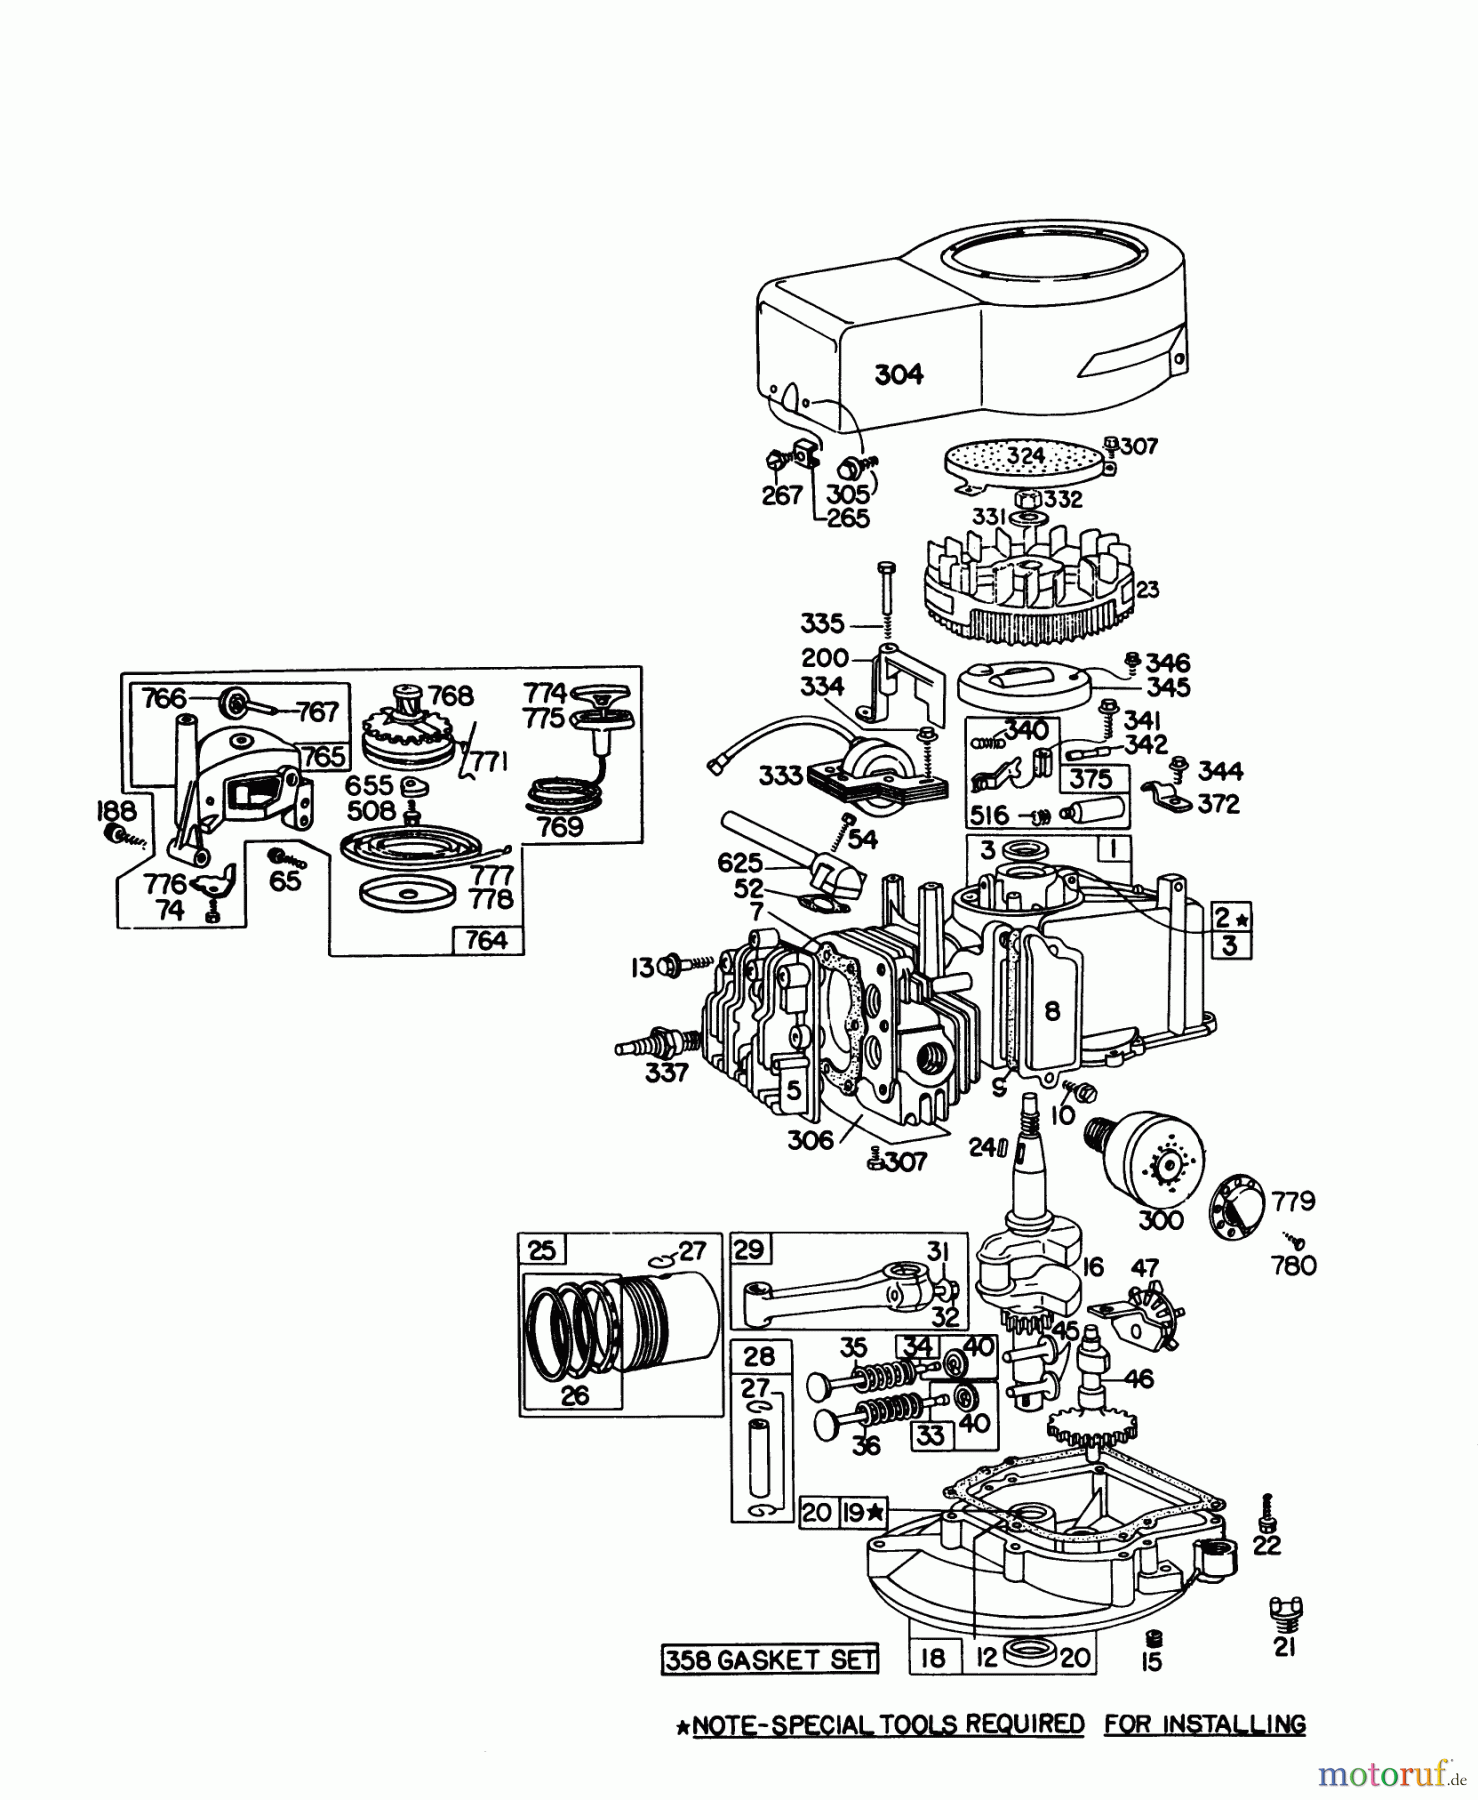  Toro Neu Mowers, Walk-Behind Seite 1 16287 - Toro Whirlwind II Lawnmower, 1978 (8000001-8999999) ENGINE BRIGGS & STRATTON MODEL 92908-1842-01 FOR 21